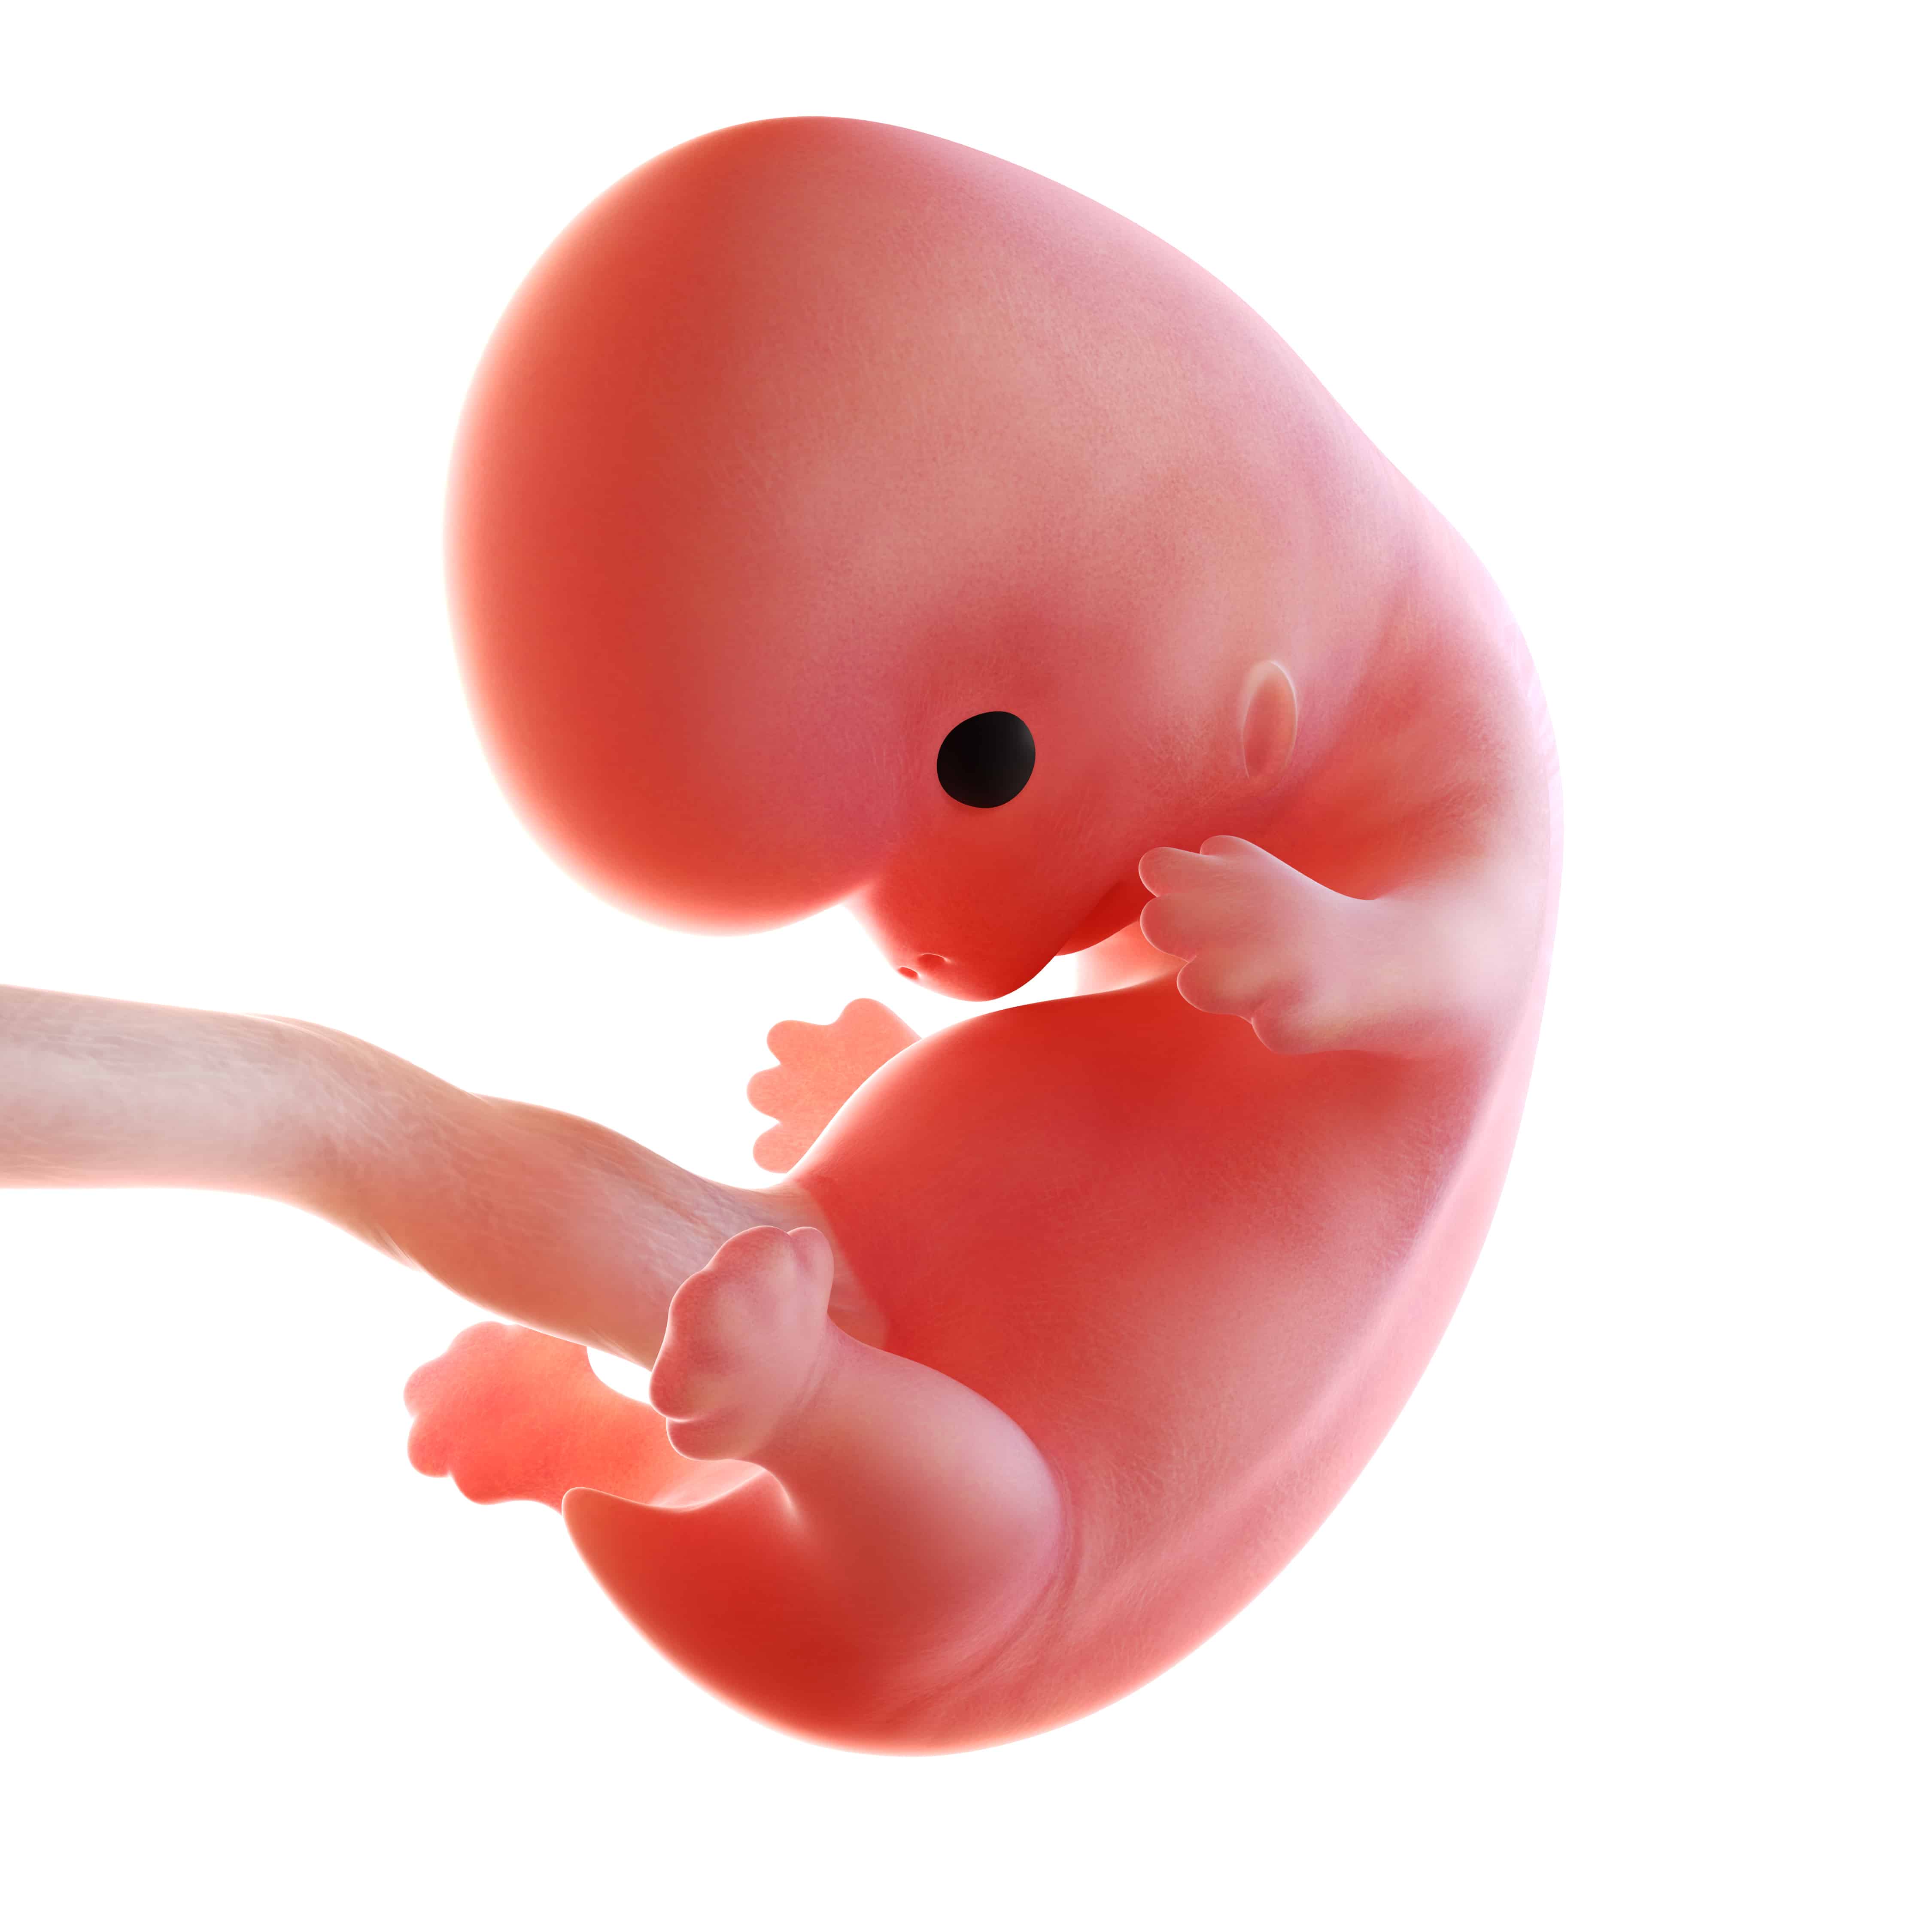 Как выглядит ребенок на 8 неделе. Зародыш на 8 неделе беременности. 8 Недель беременности Эмбрио. Плод 7-8 недель беременности. 8 Недель беременности фото эмбриона.